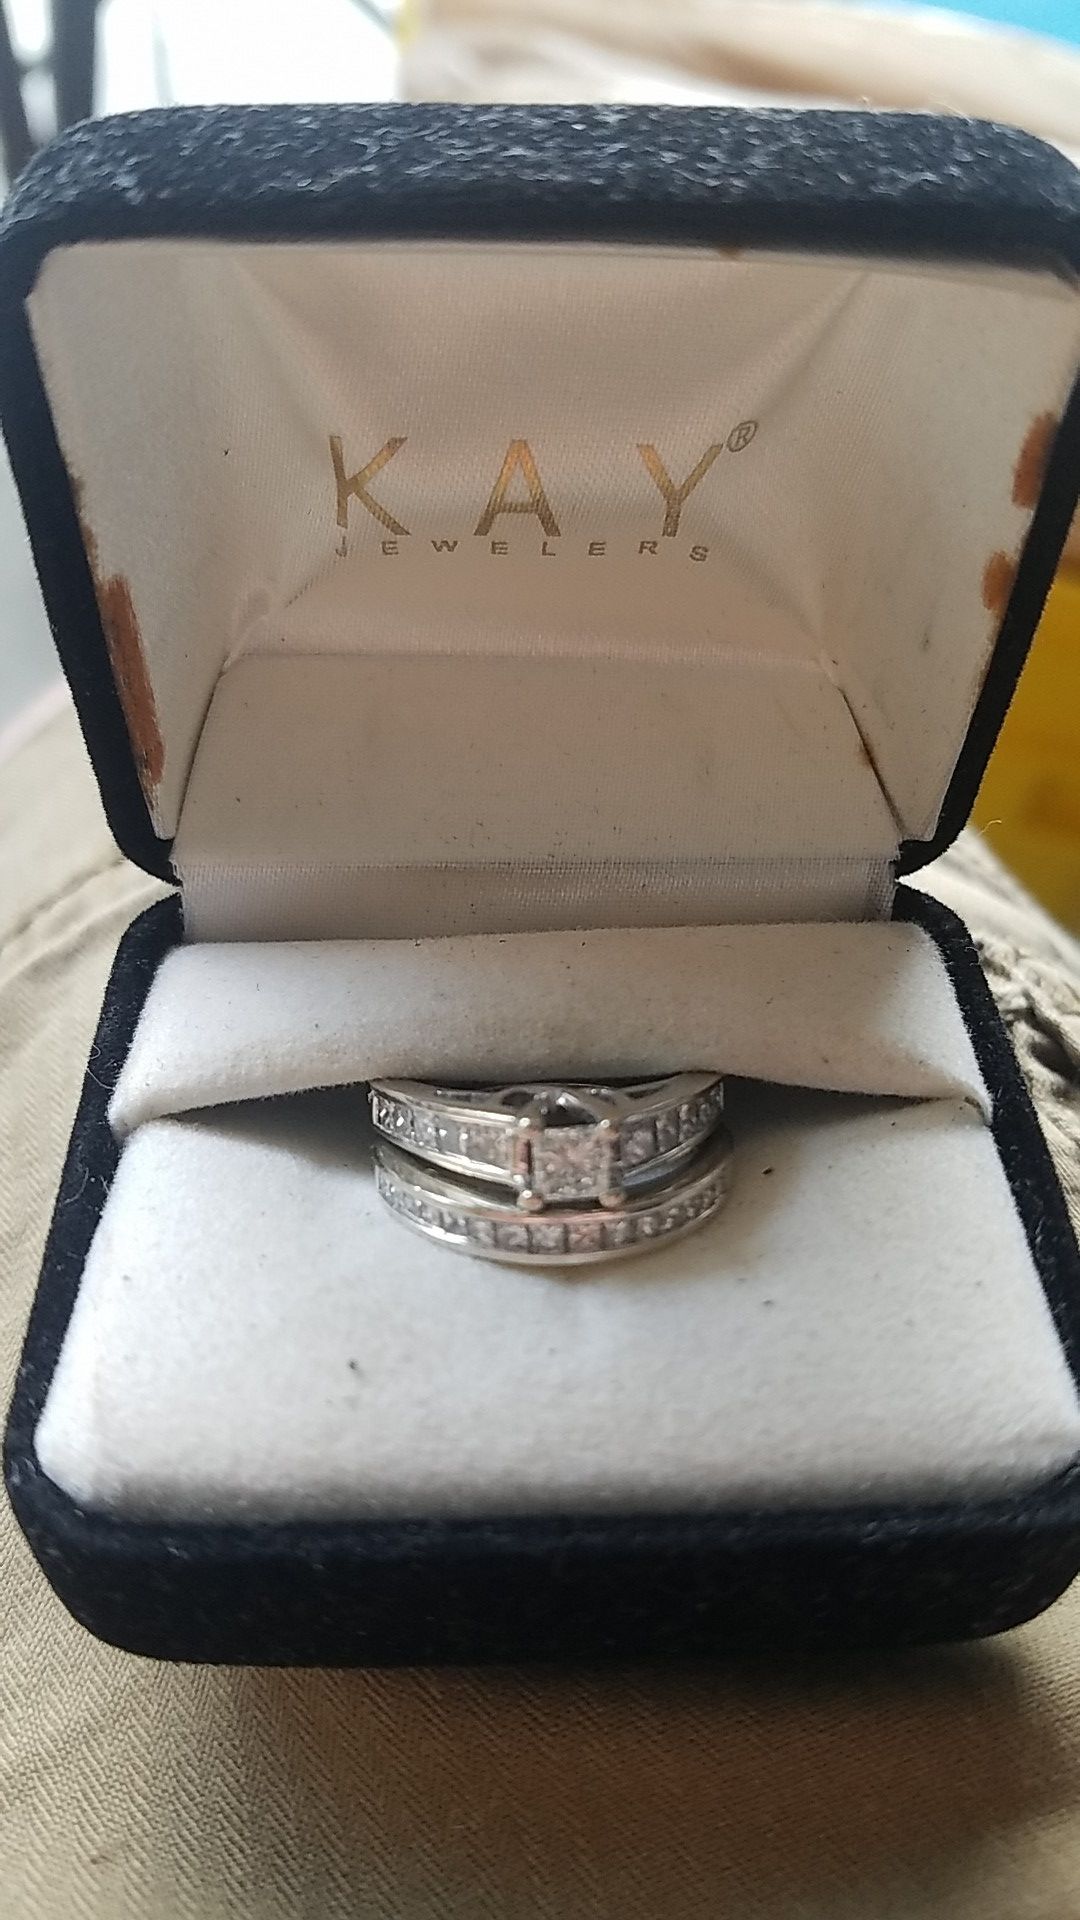 Kay's wedding ring set 2 karrot total 14k white gold